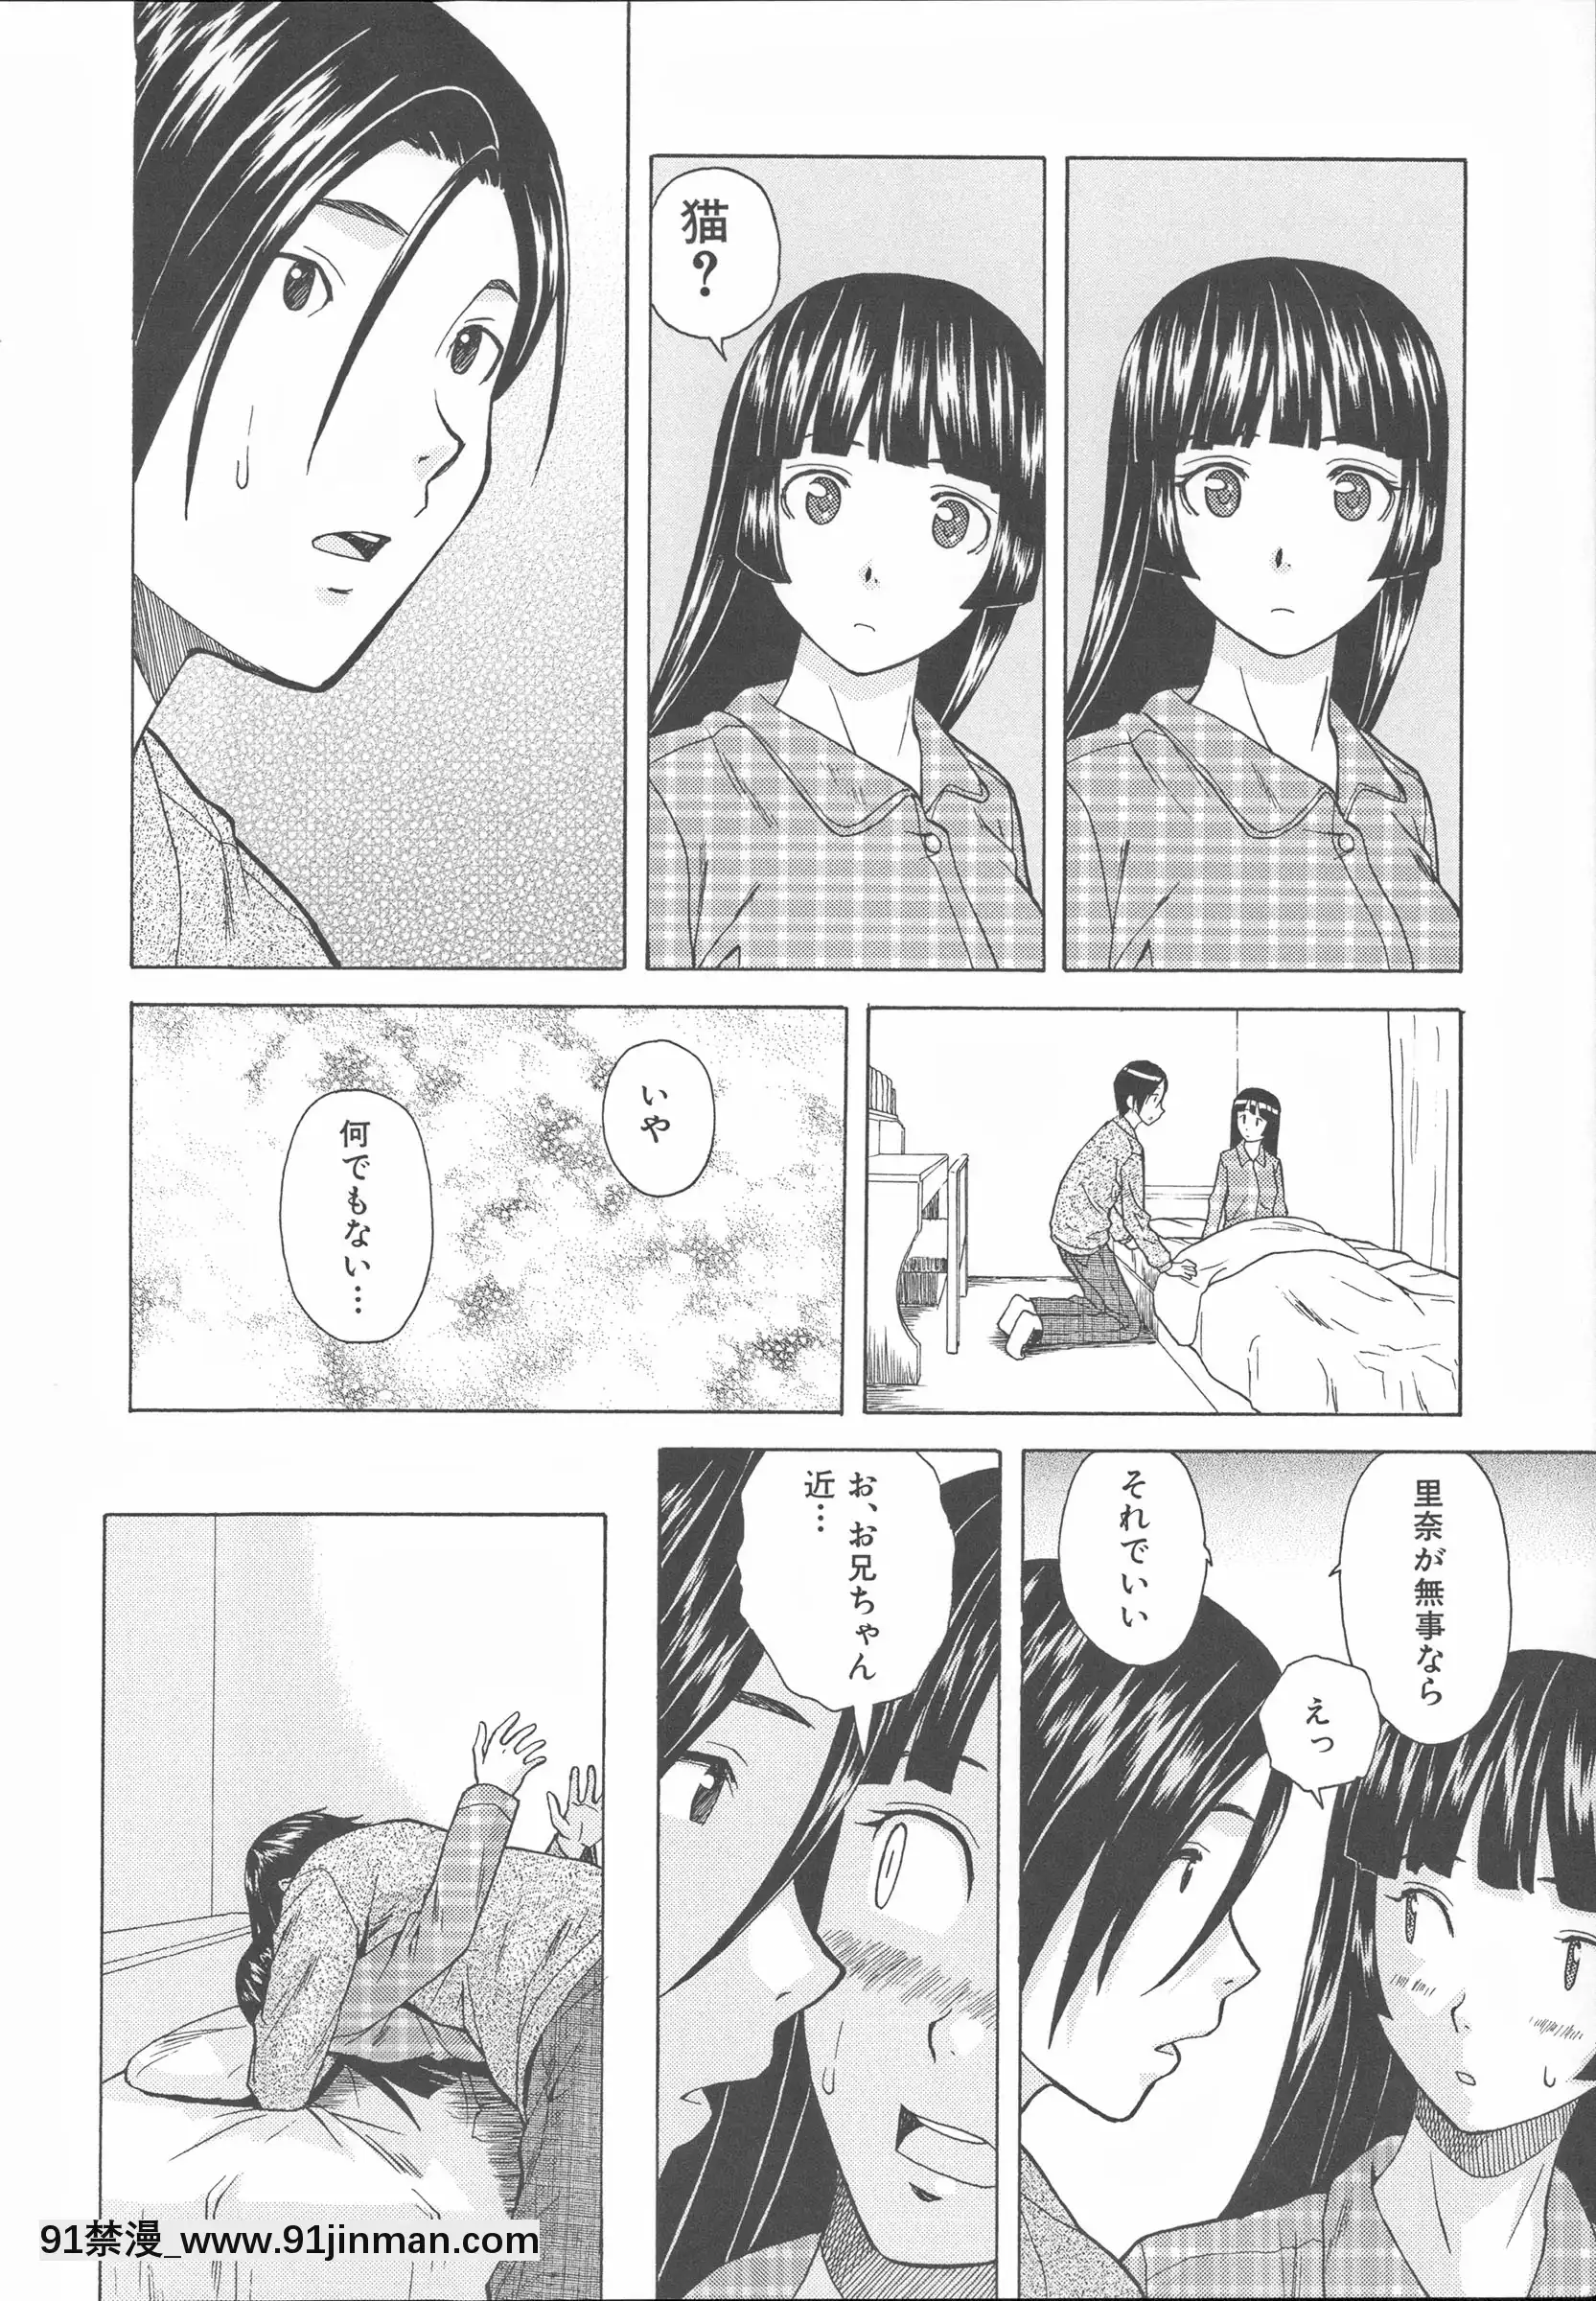 [枫 牙] Hoàn cảnh của anh trai và em gái.【truyện tranh kin no kanojo gin no kanojo】